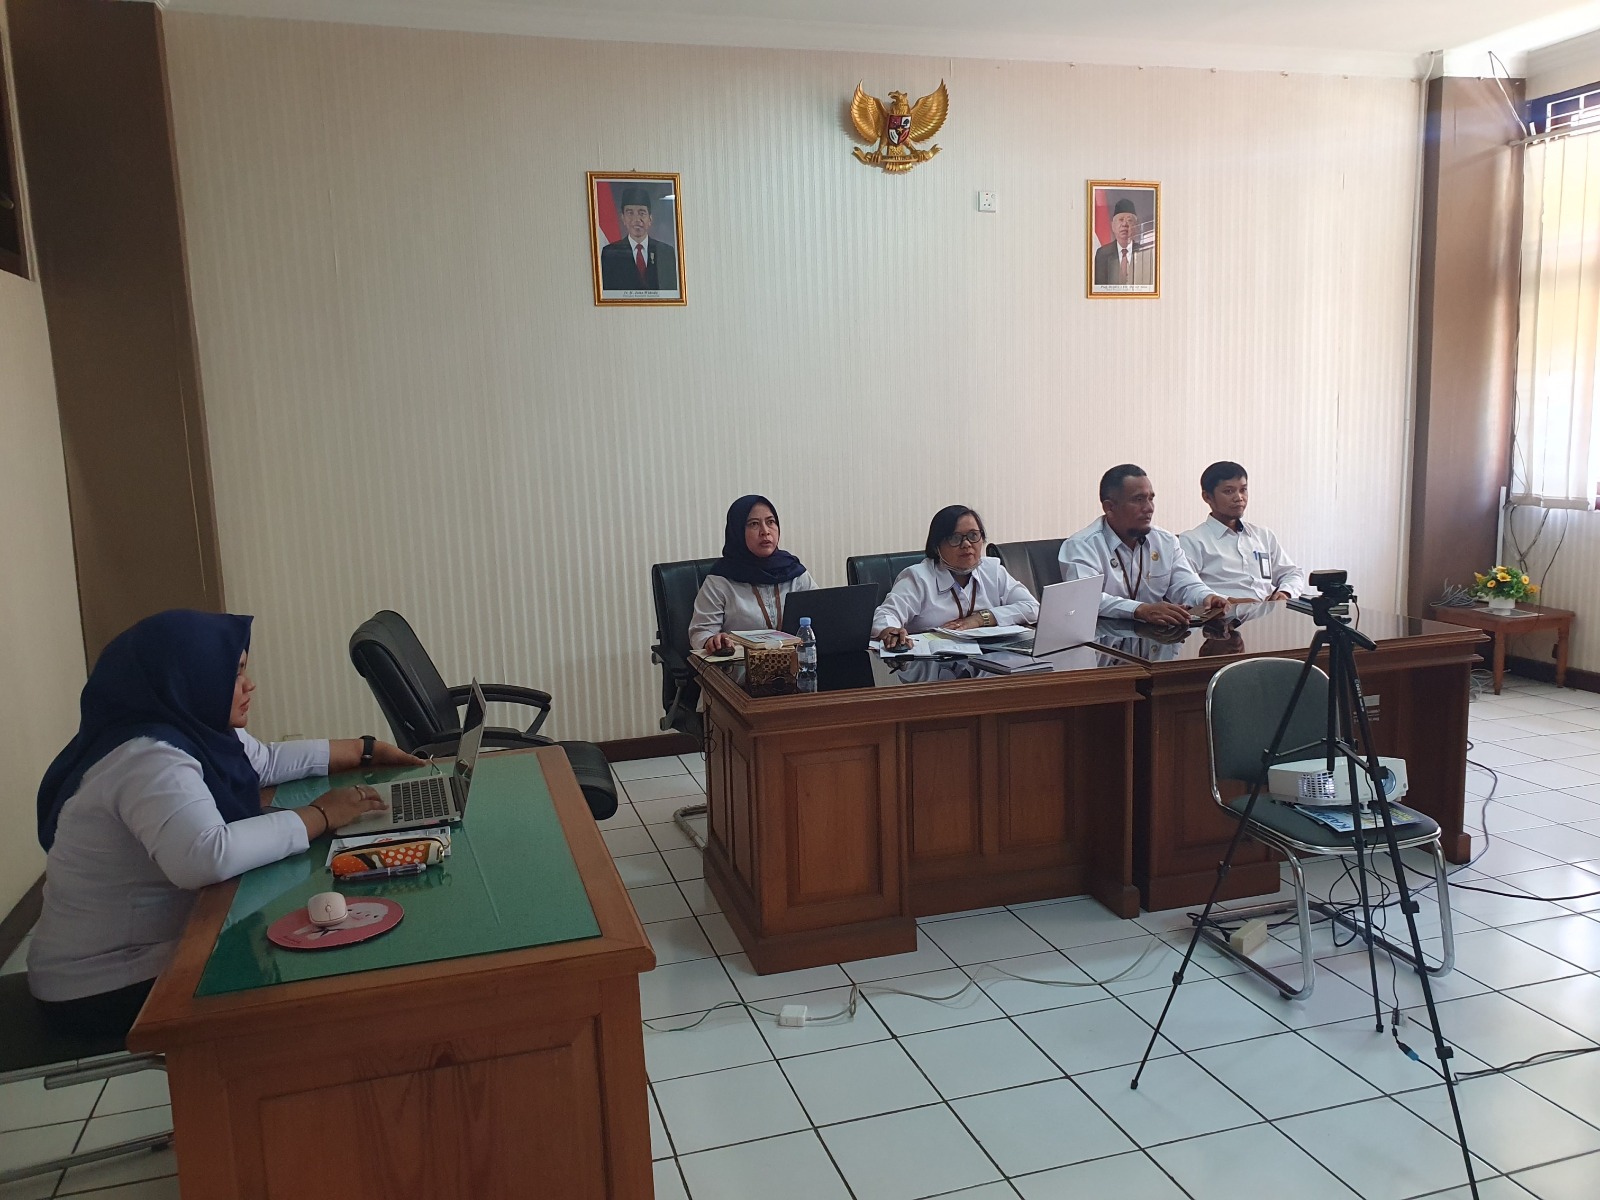 Pengadilan Negeri Yogyakarta Mengikuti Sosialisasi Penetapan Kelas Jabatan dan Penyesuaian Tukin Pegawai di Lingkungan Mahkamah Agung RI